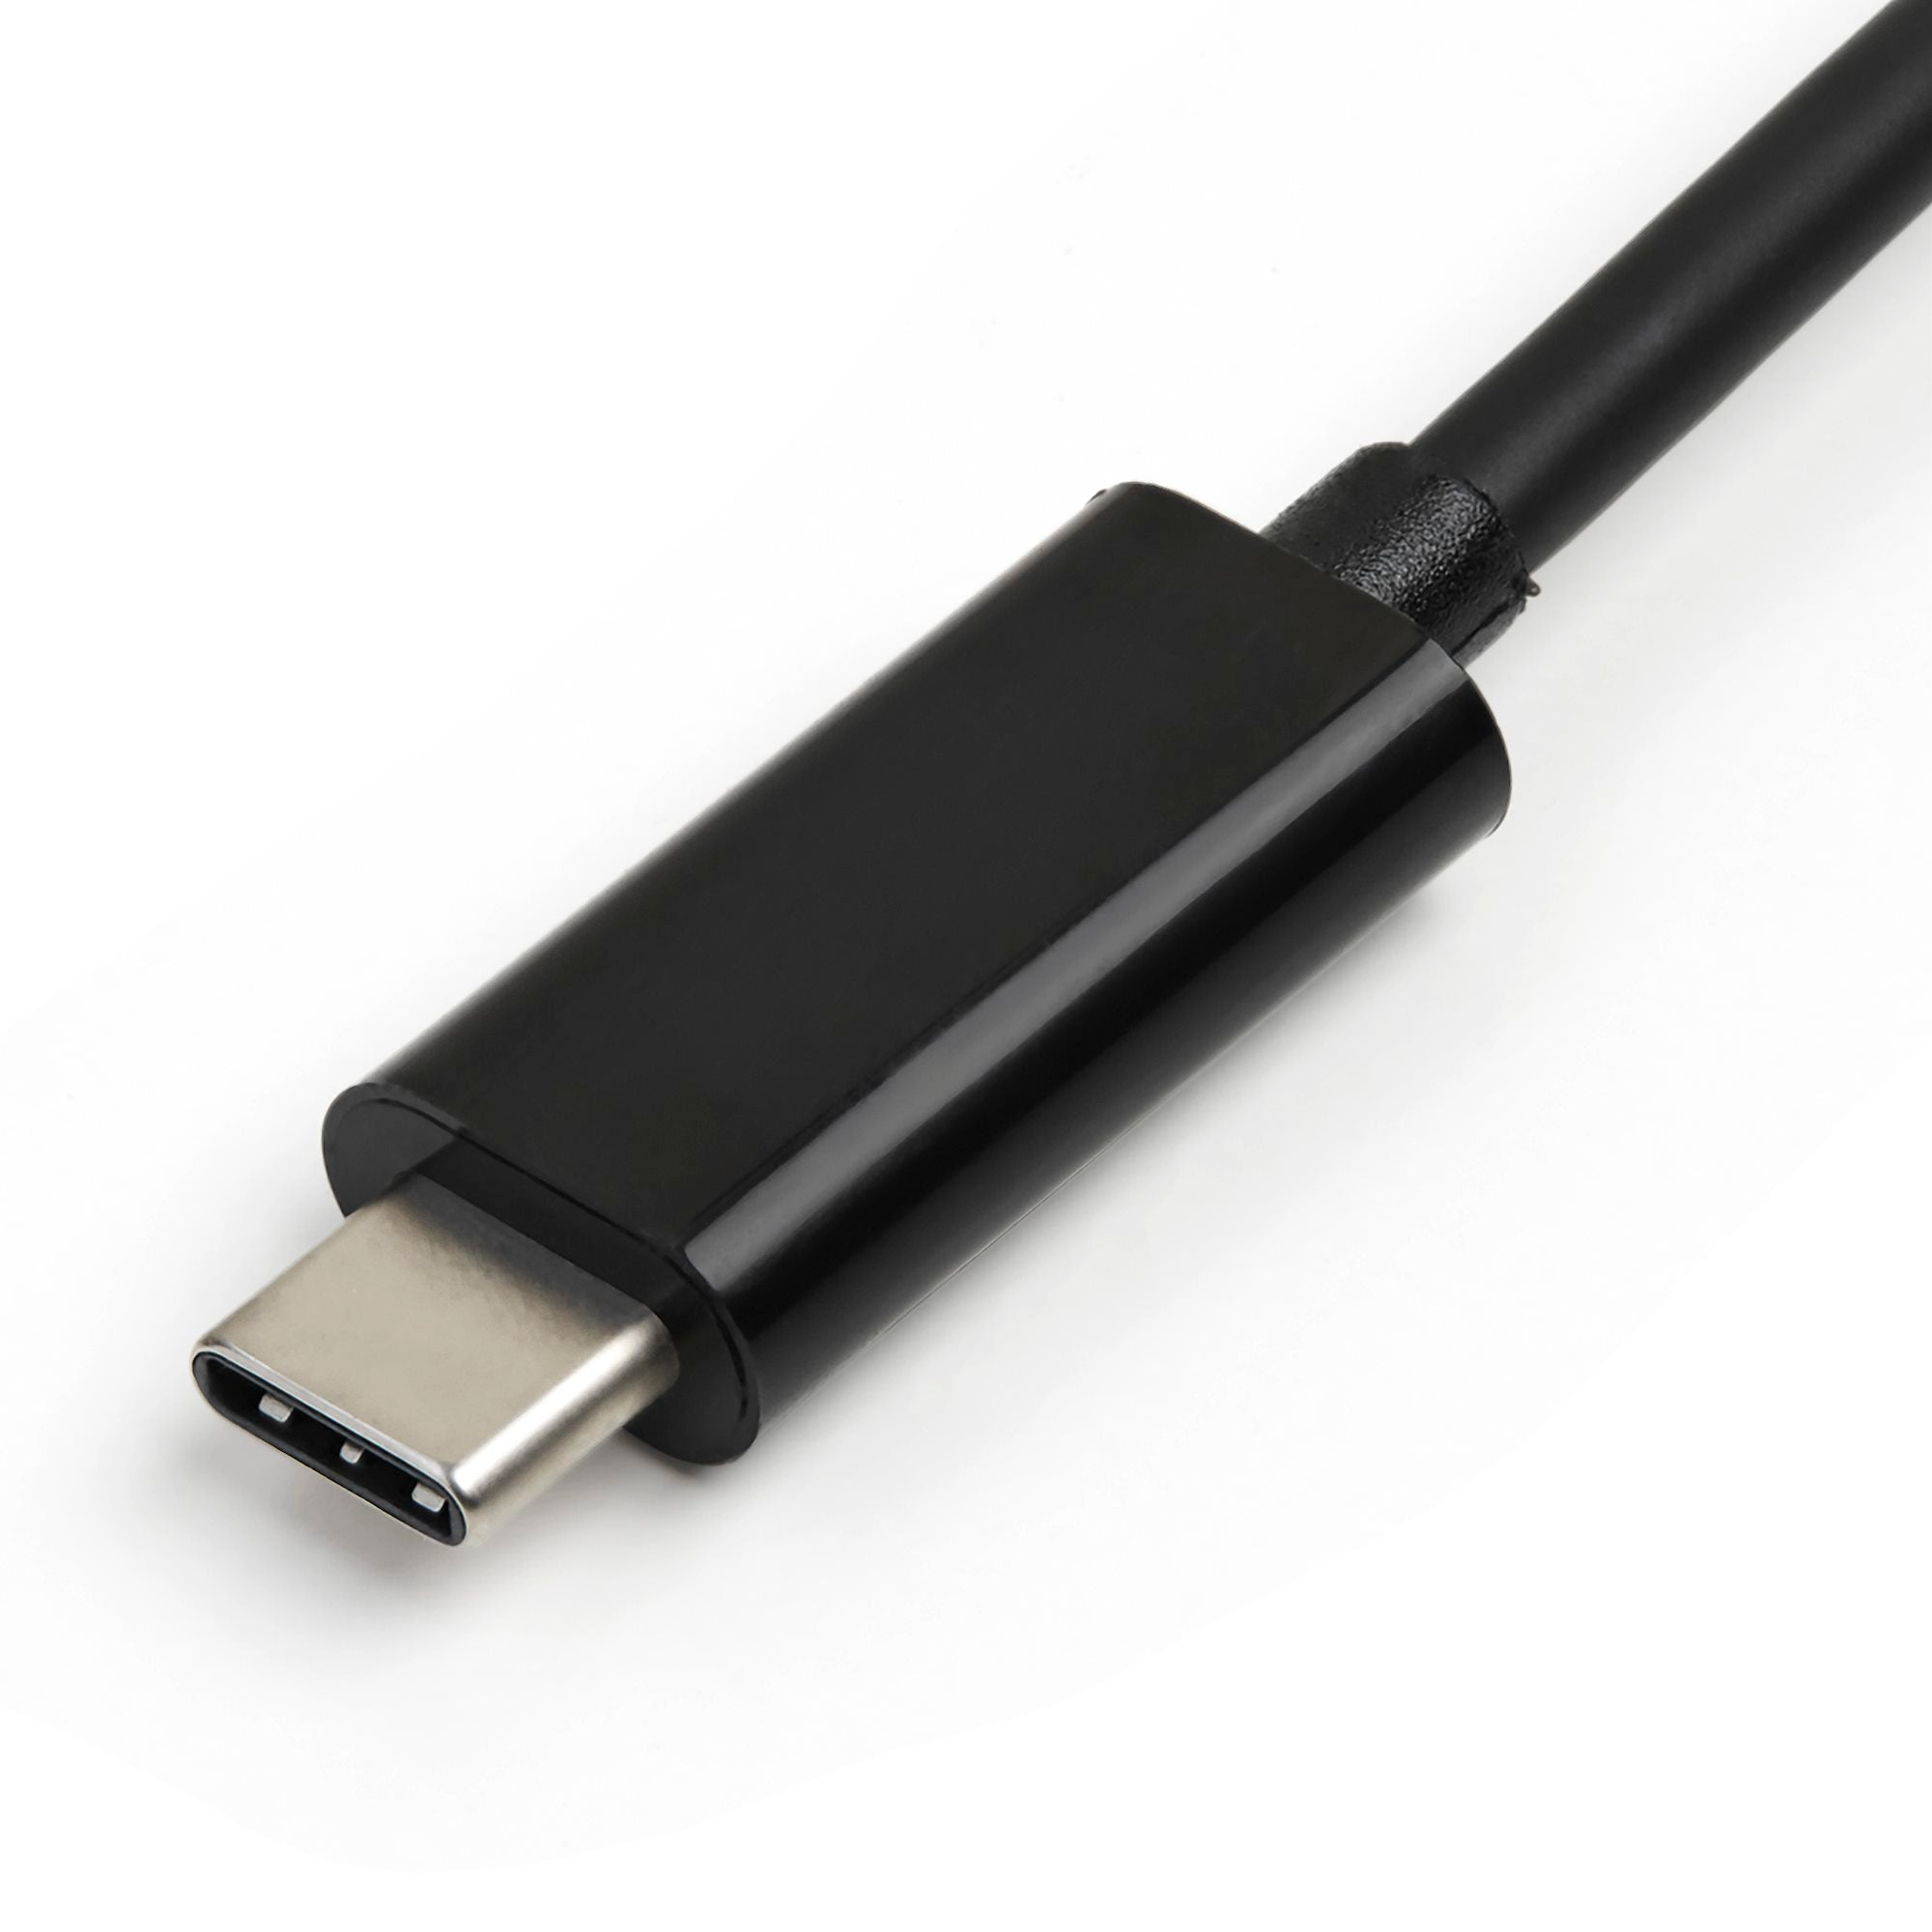 Lazos Type-C 4 in 1 変換アダプター [L-CHU4] (HDMI  USB3.0  USB2.0  Type-C 充電機能のみ)